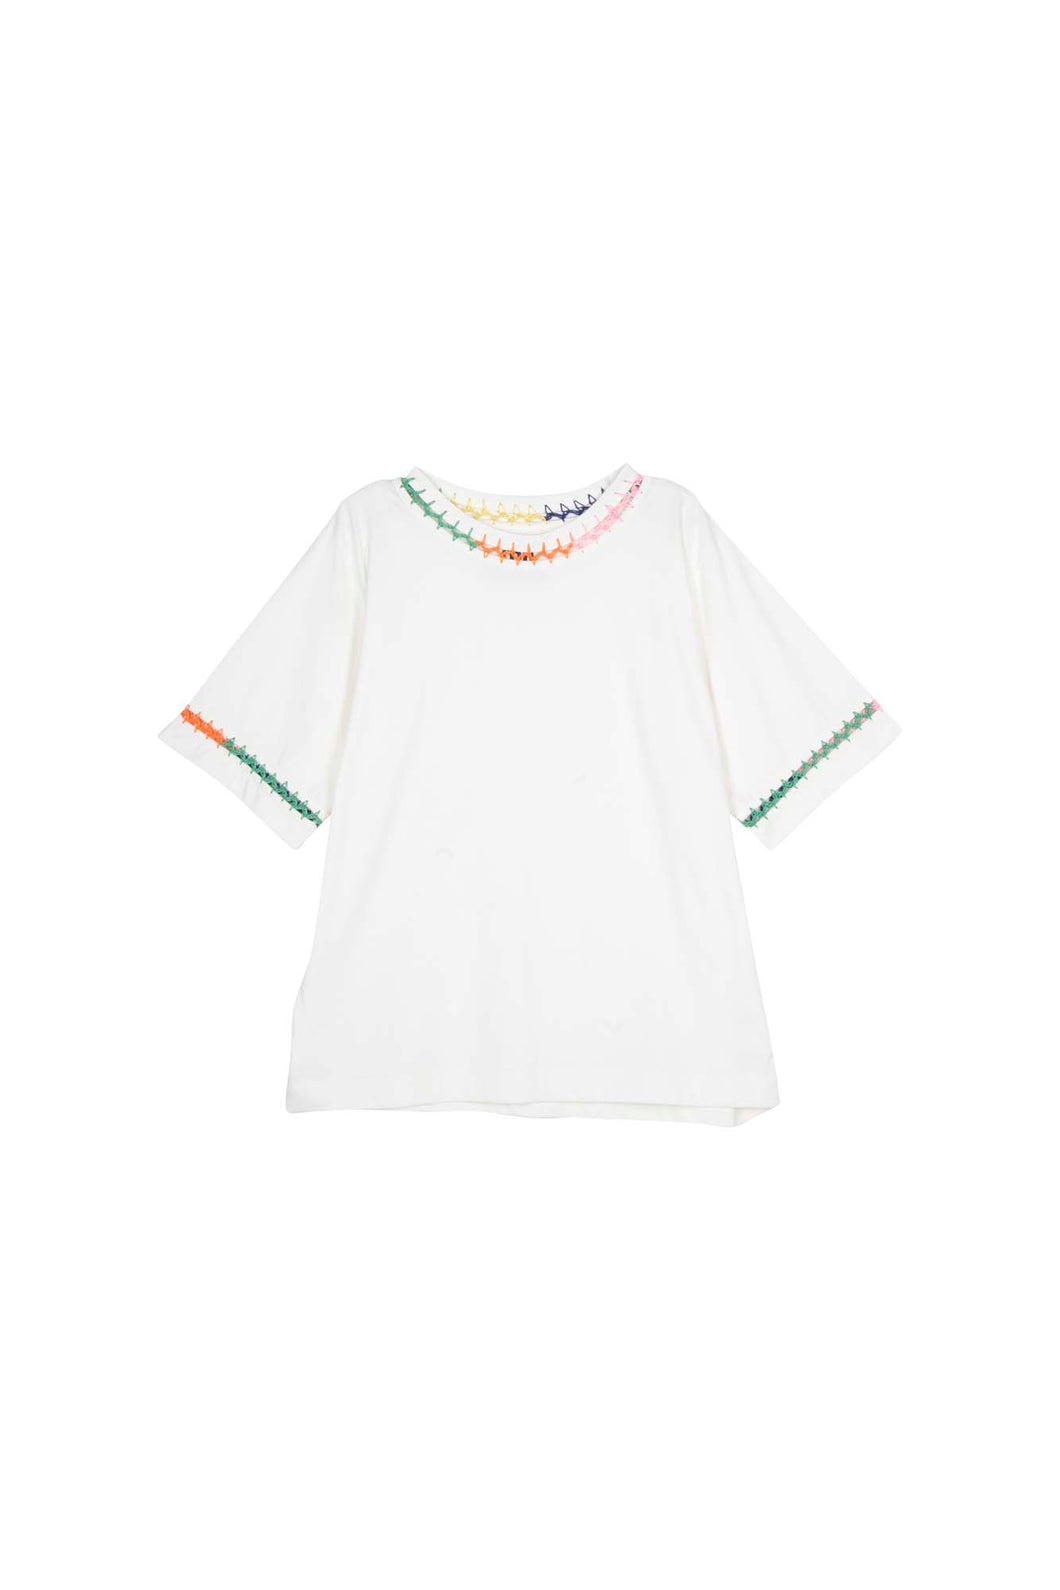 Mii Zoe T-Shirt - White